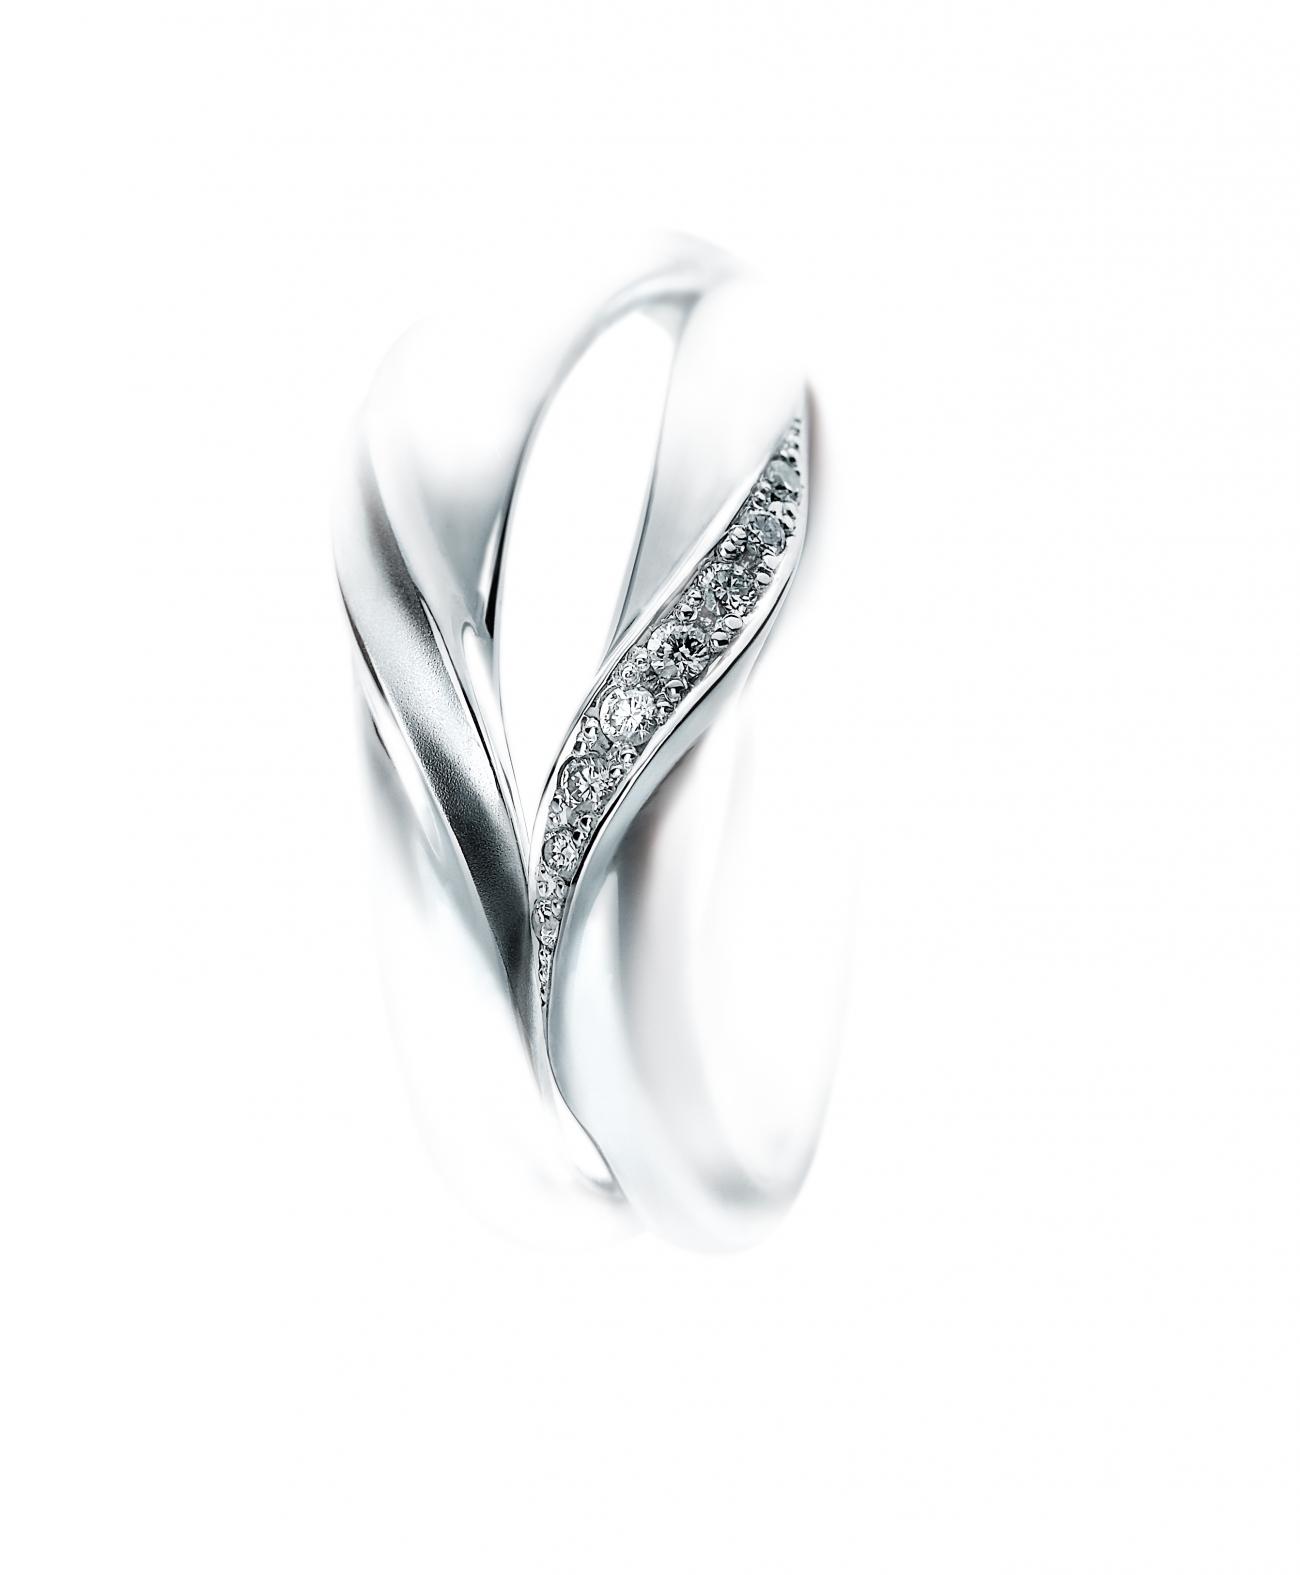 ２人の指輪を重ねるとハートが出来る、そんなオシャレな結婚指輪はSomethingBlueのMakeHeartです